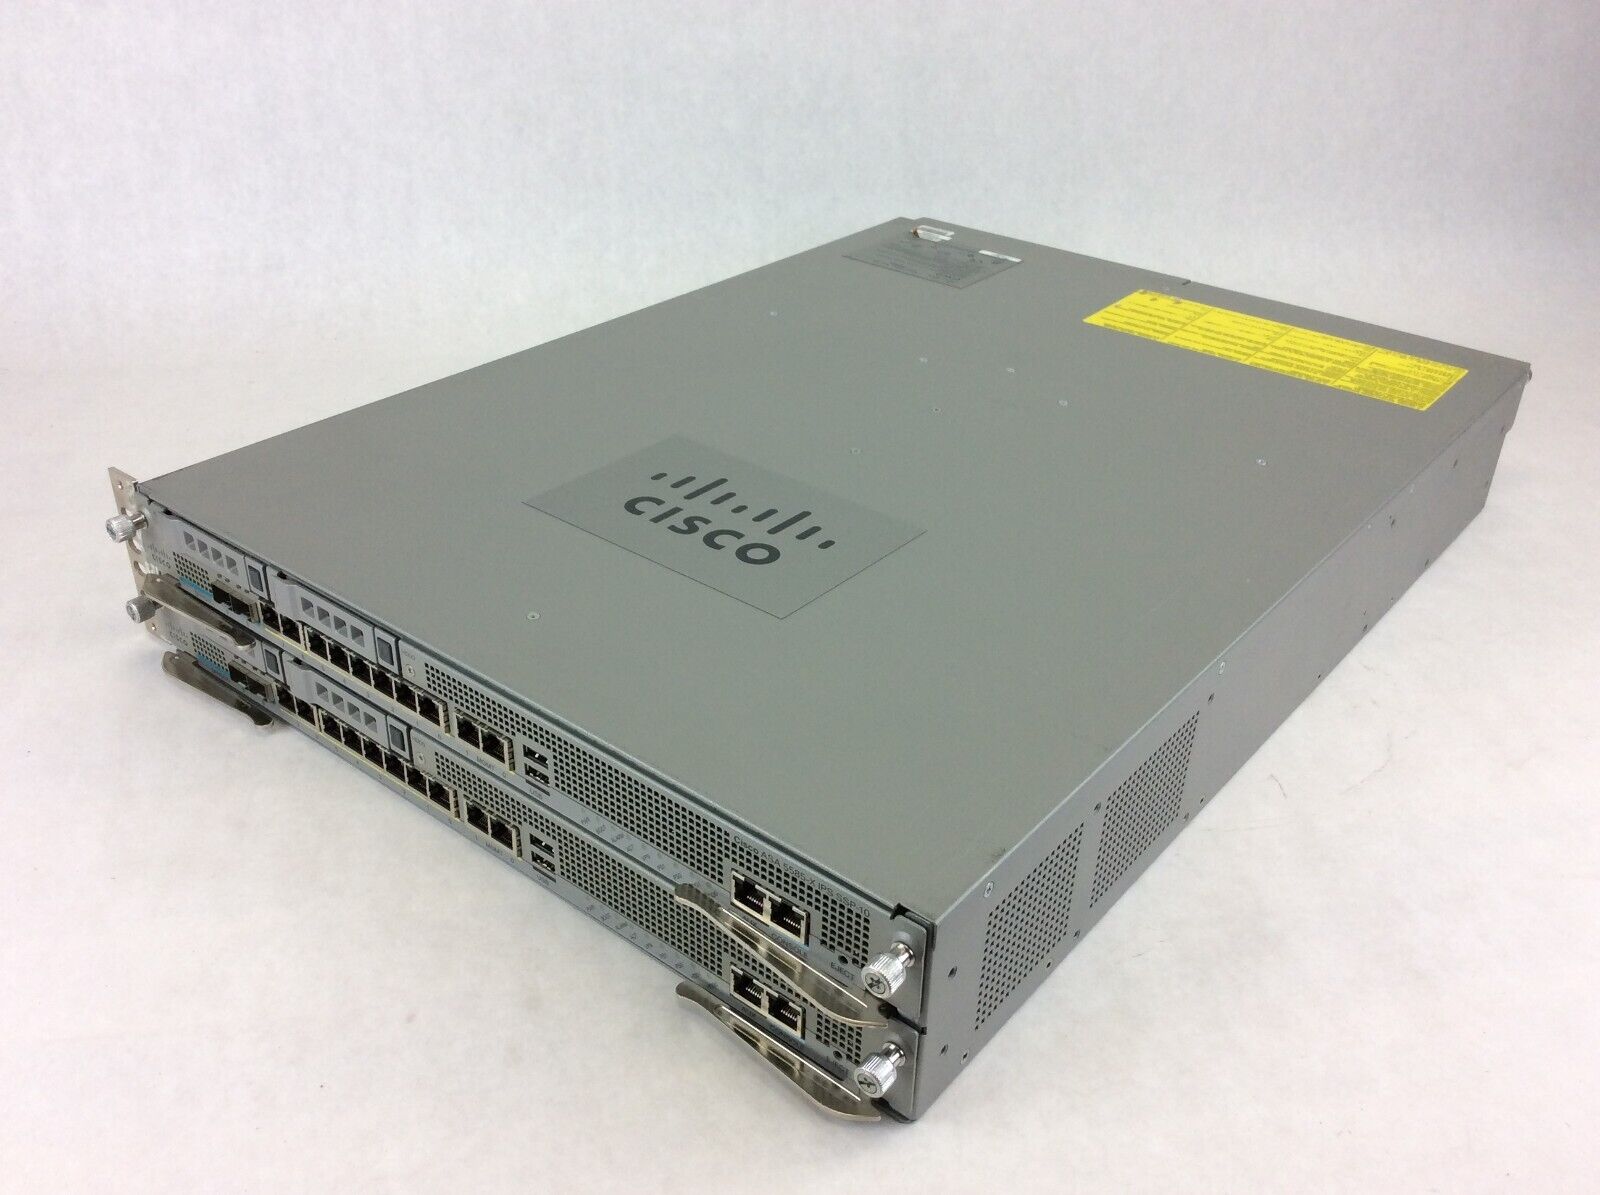 Cisco ASA 5585-X 8-Port GbE Firewall Security Appliance w/ 2 5580-X SSP-10